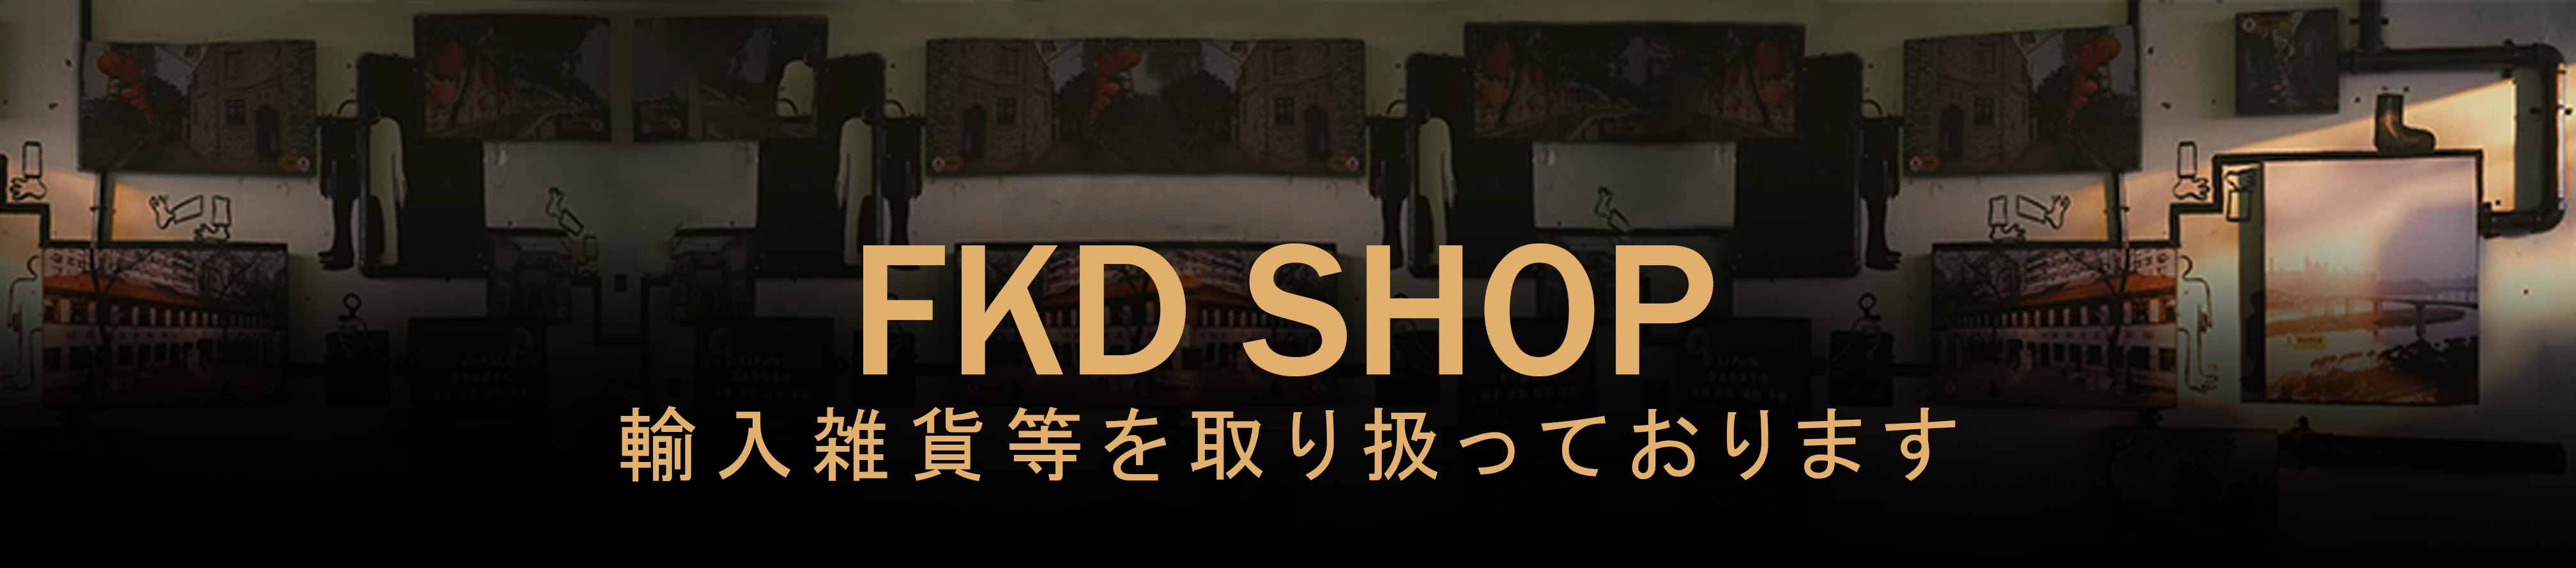 FKD SHOP ヘッダー画像